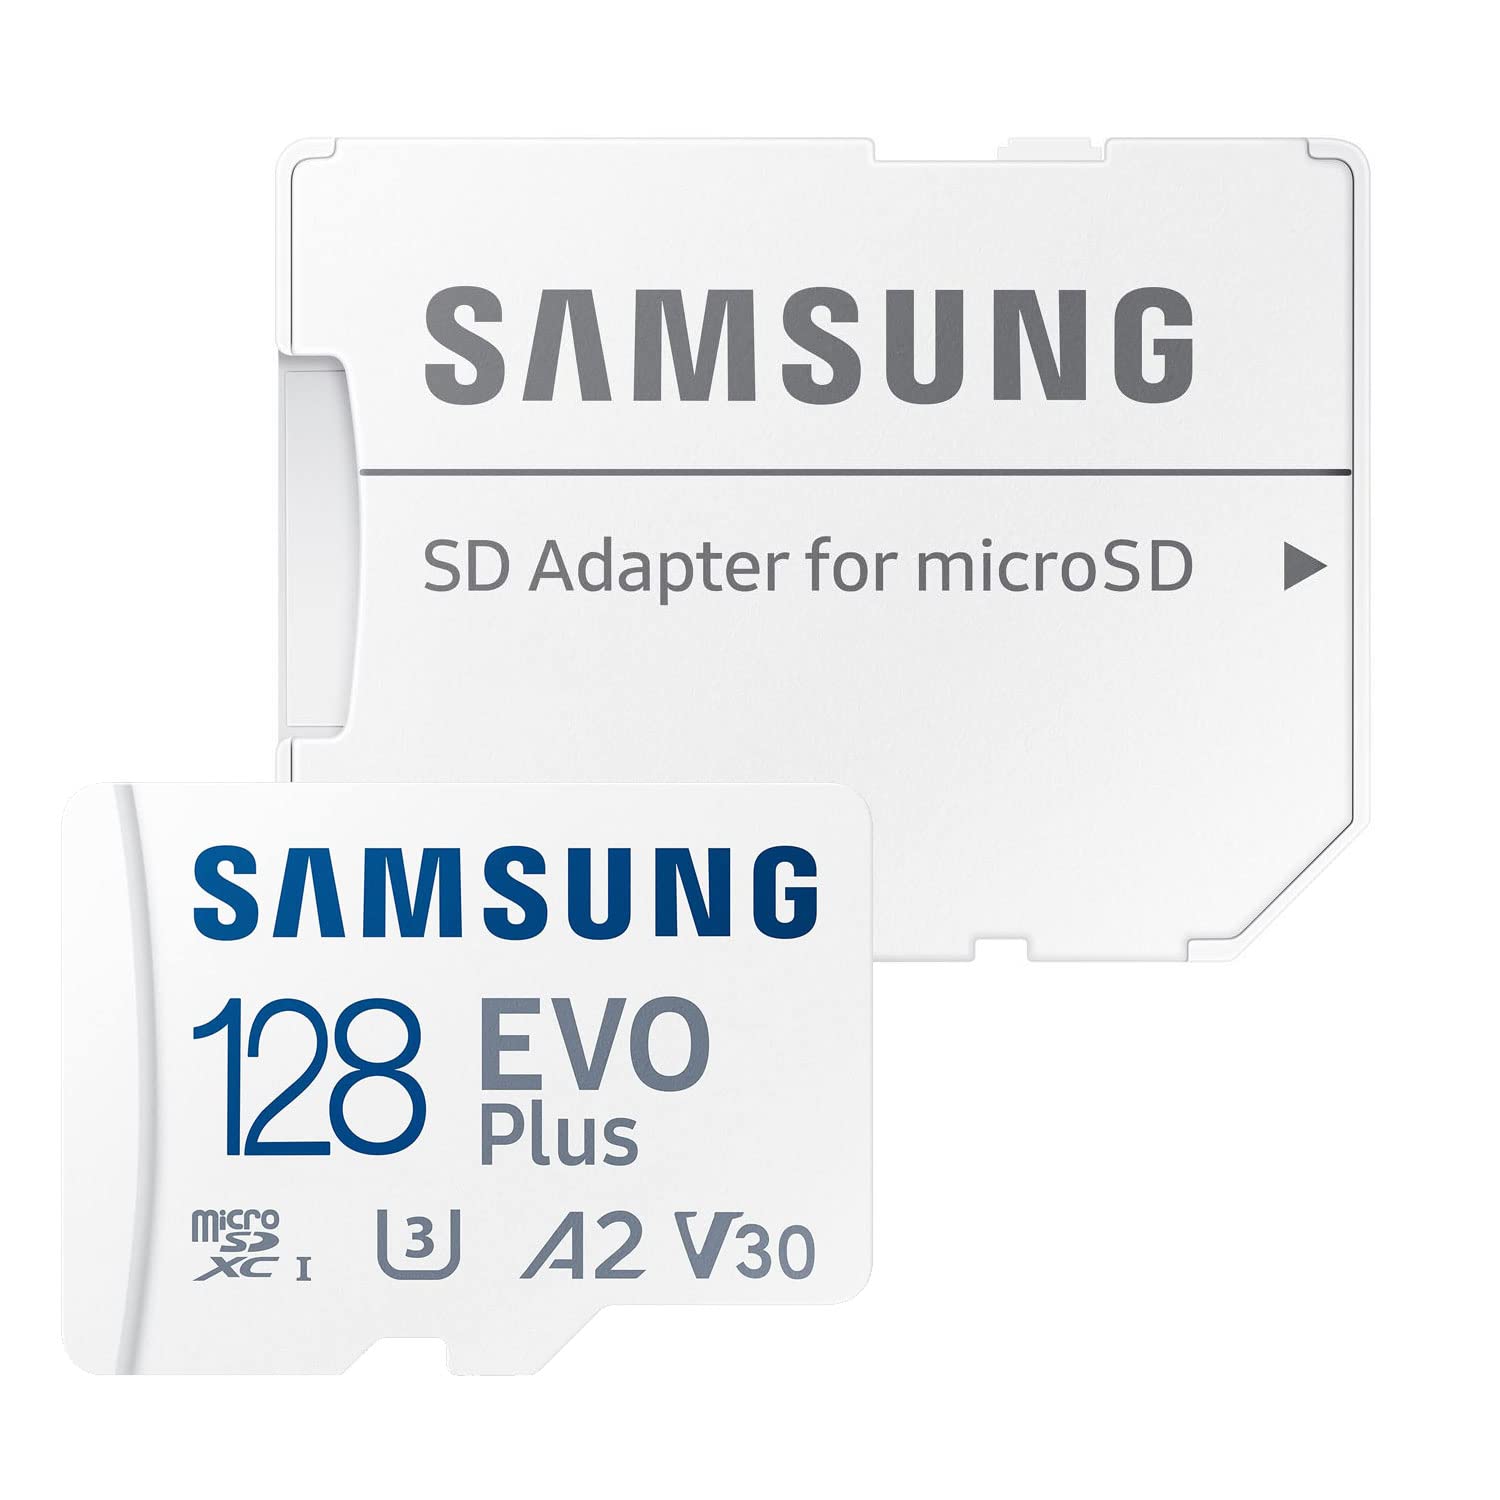 microSDXC 128GB EVO Plus UHS-I U3 V30 4K A2対応 Samsung サムスン 専用SDアダプター付5年保証 [並行..